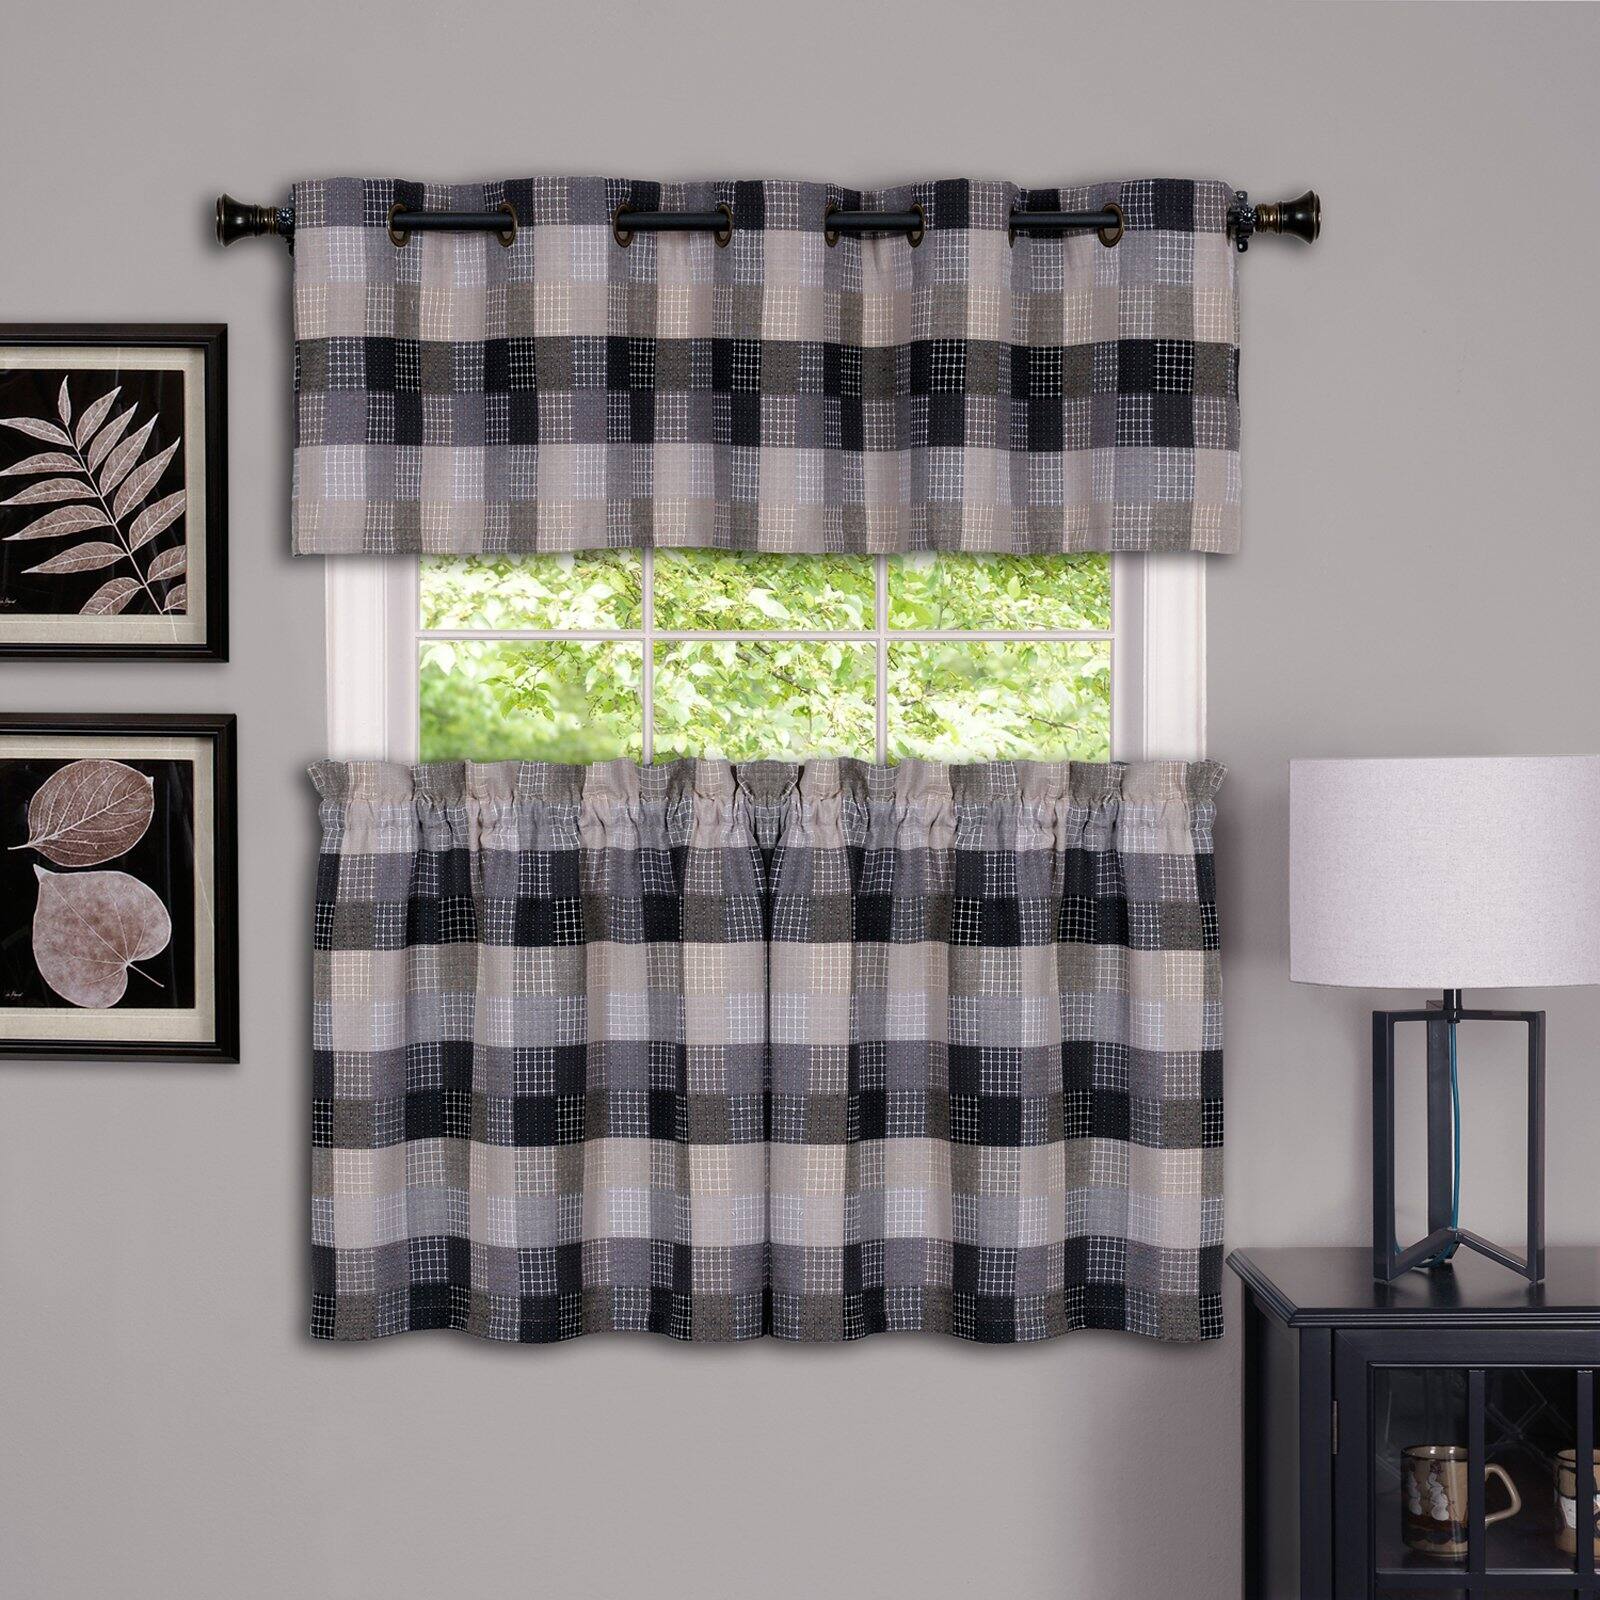 Achim Harvard Rod Pocket Light Filtering Curtain Tier Pair, Black, 57" x 36" - image 1 of 6